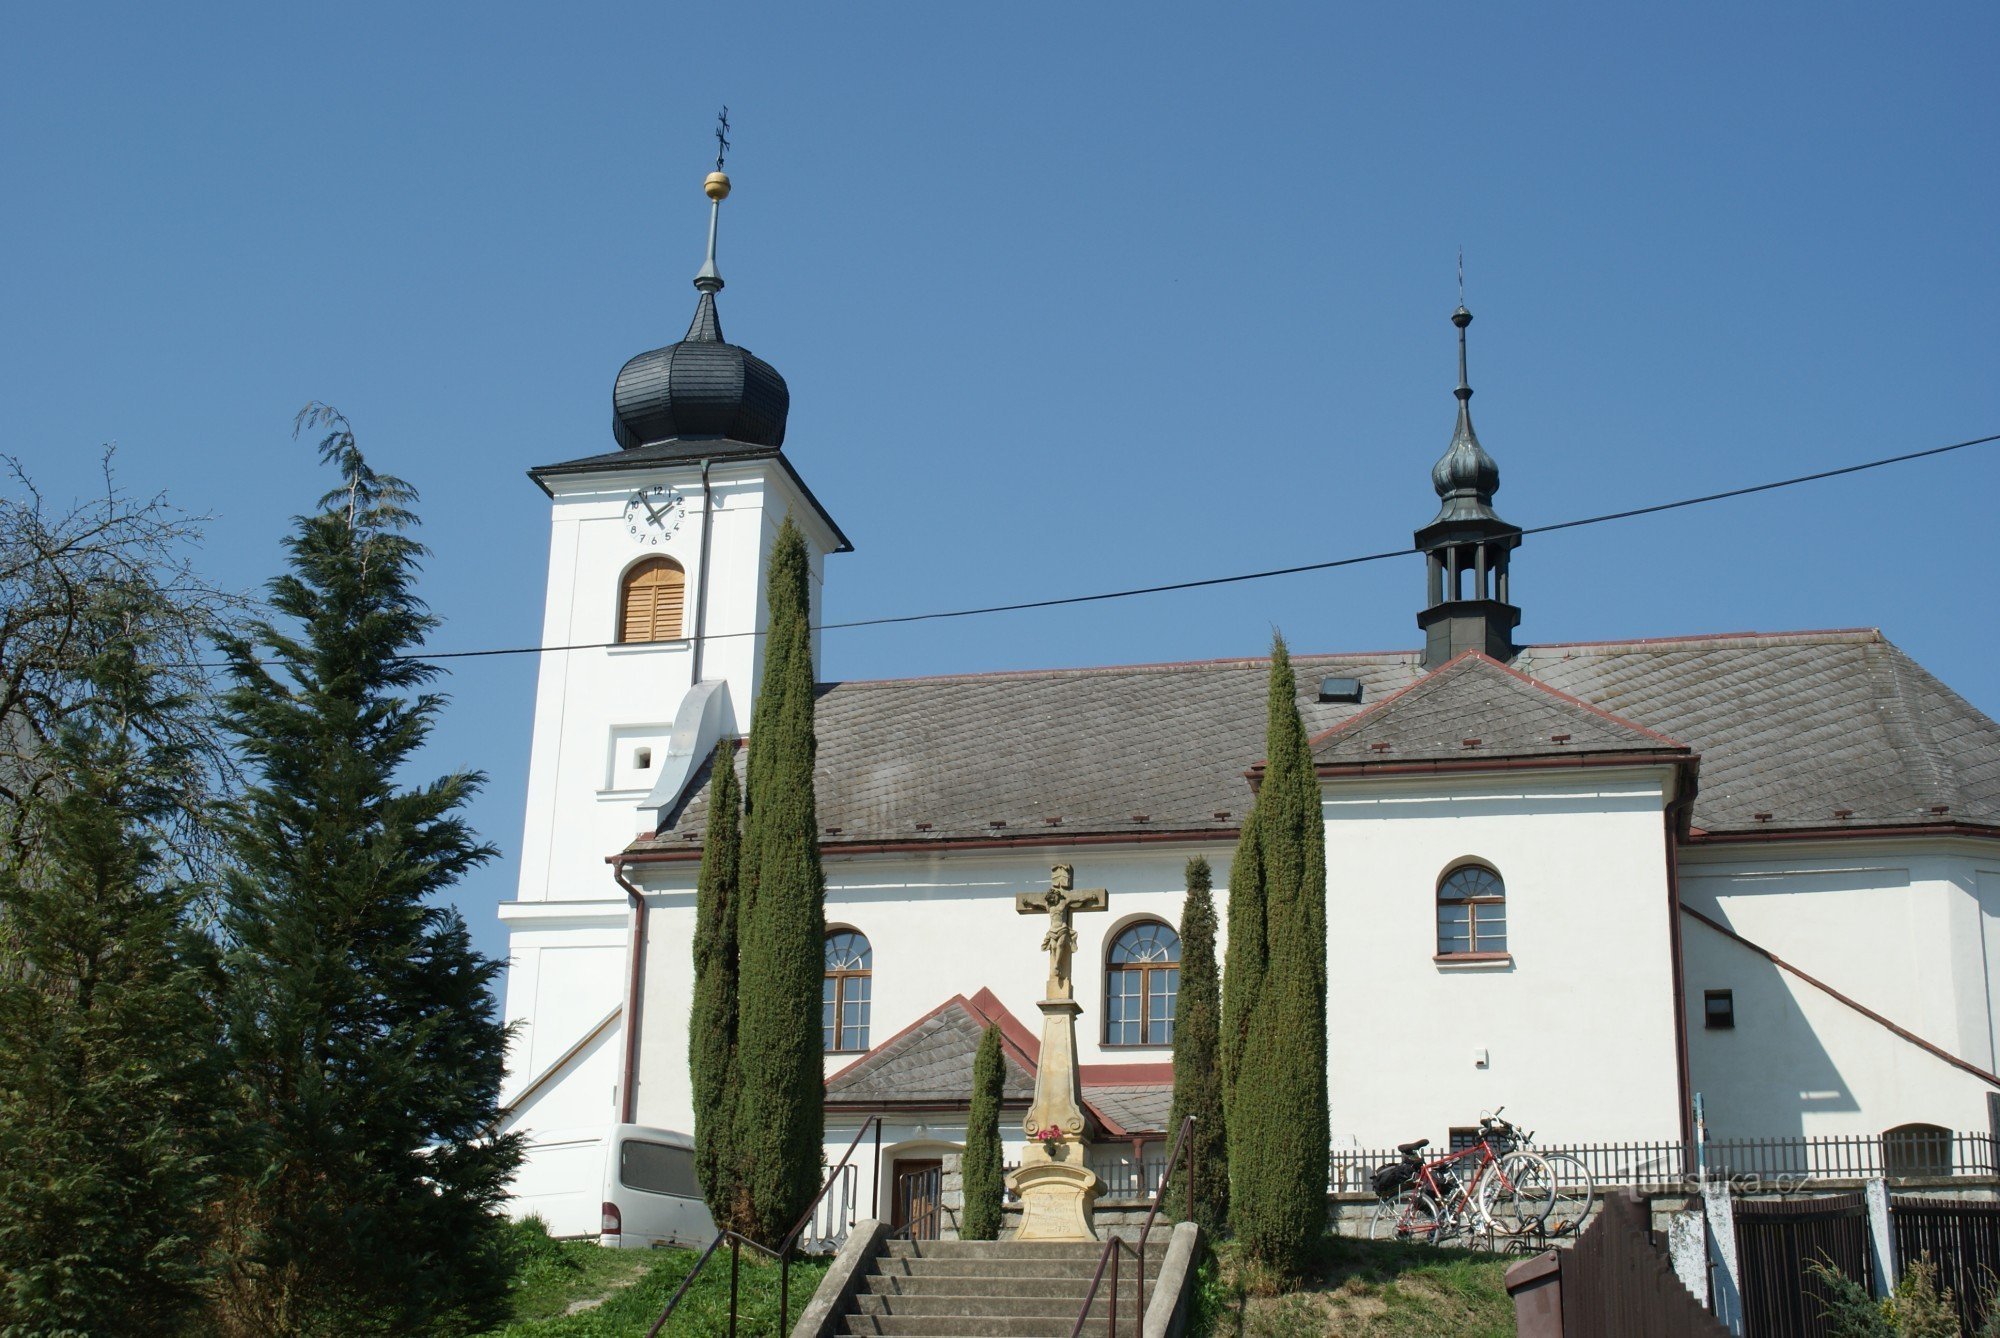 Crkva Svih Svetih